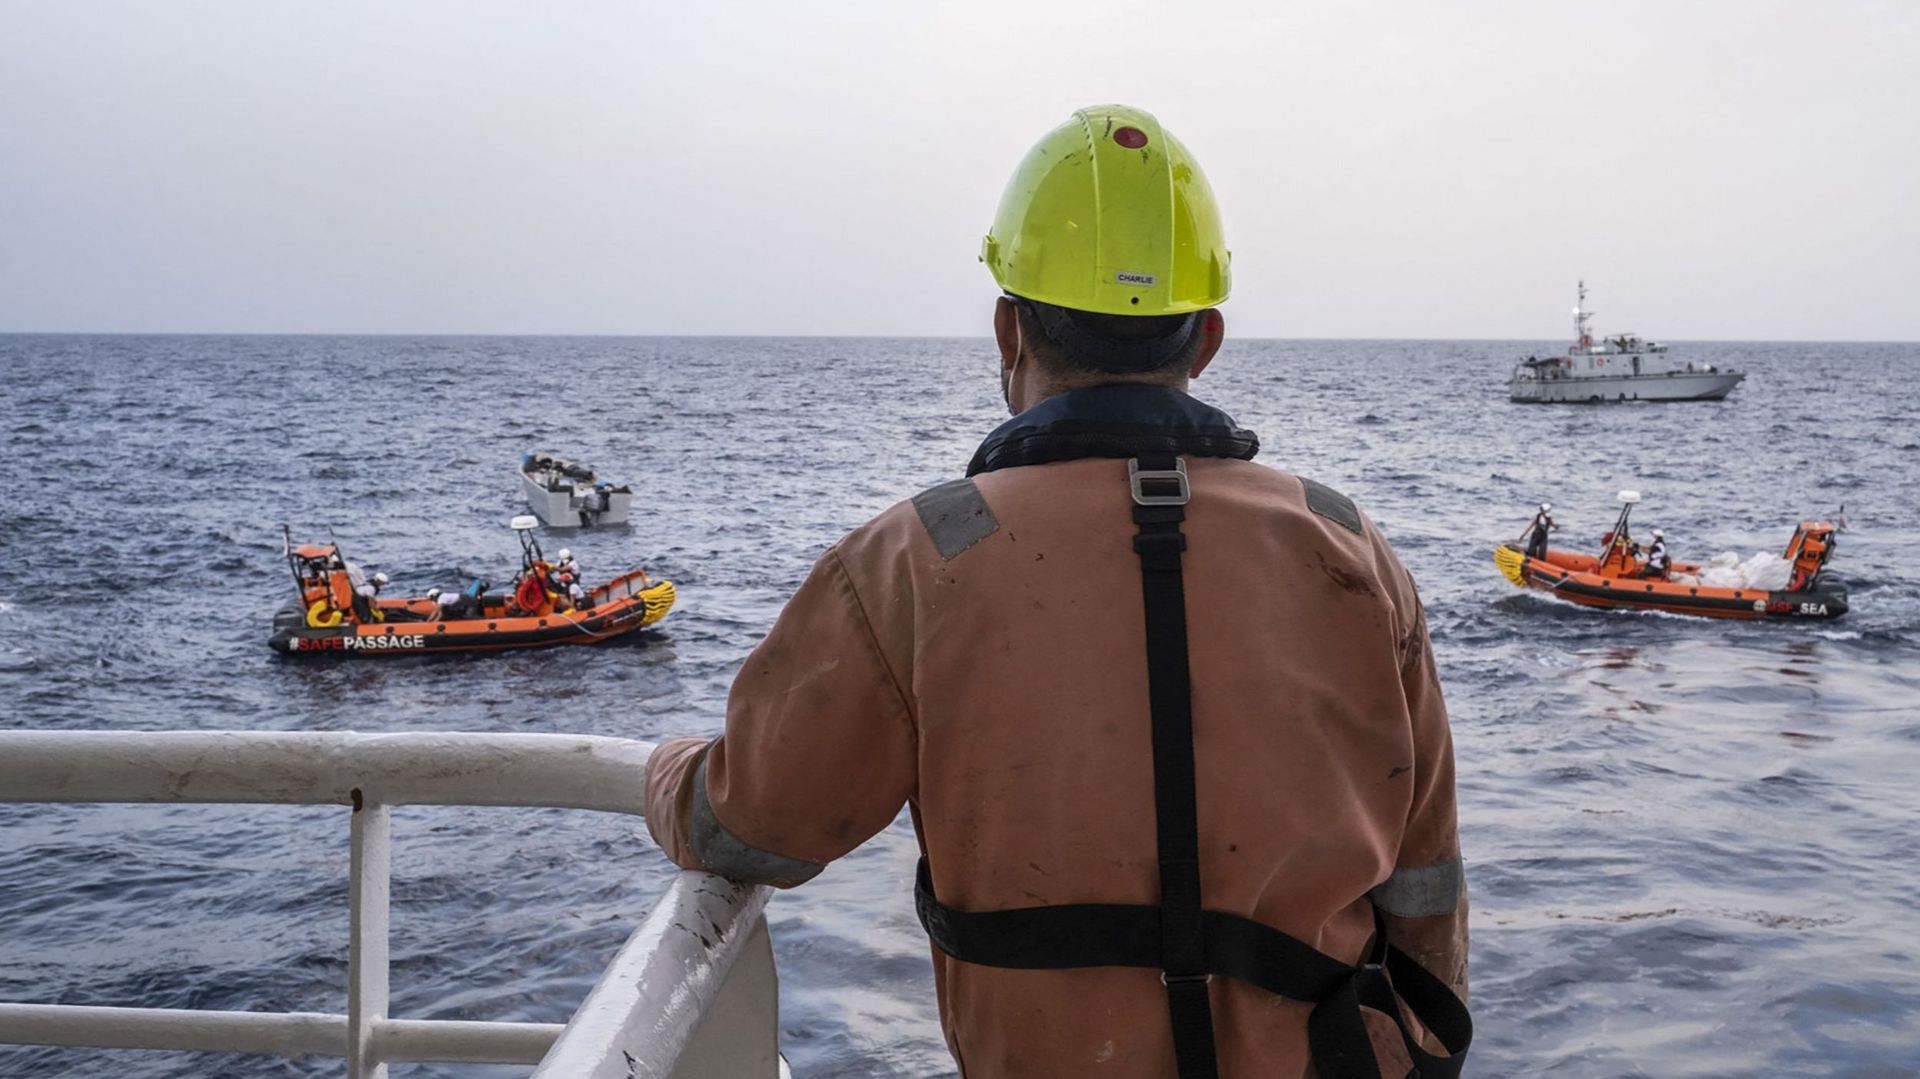 Cette photo publiée le 17 novembre 2021 par Médecins Sans Frontières (MSF) montre des membres de l’équipage du Geo Barents participant à une opération de recherche et de sauvetage de migrants à environ 30 miles des côtes libyennes.